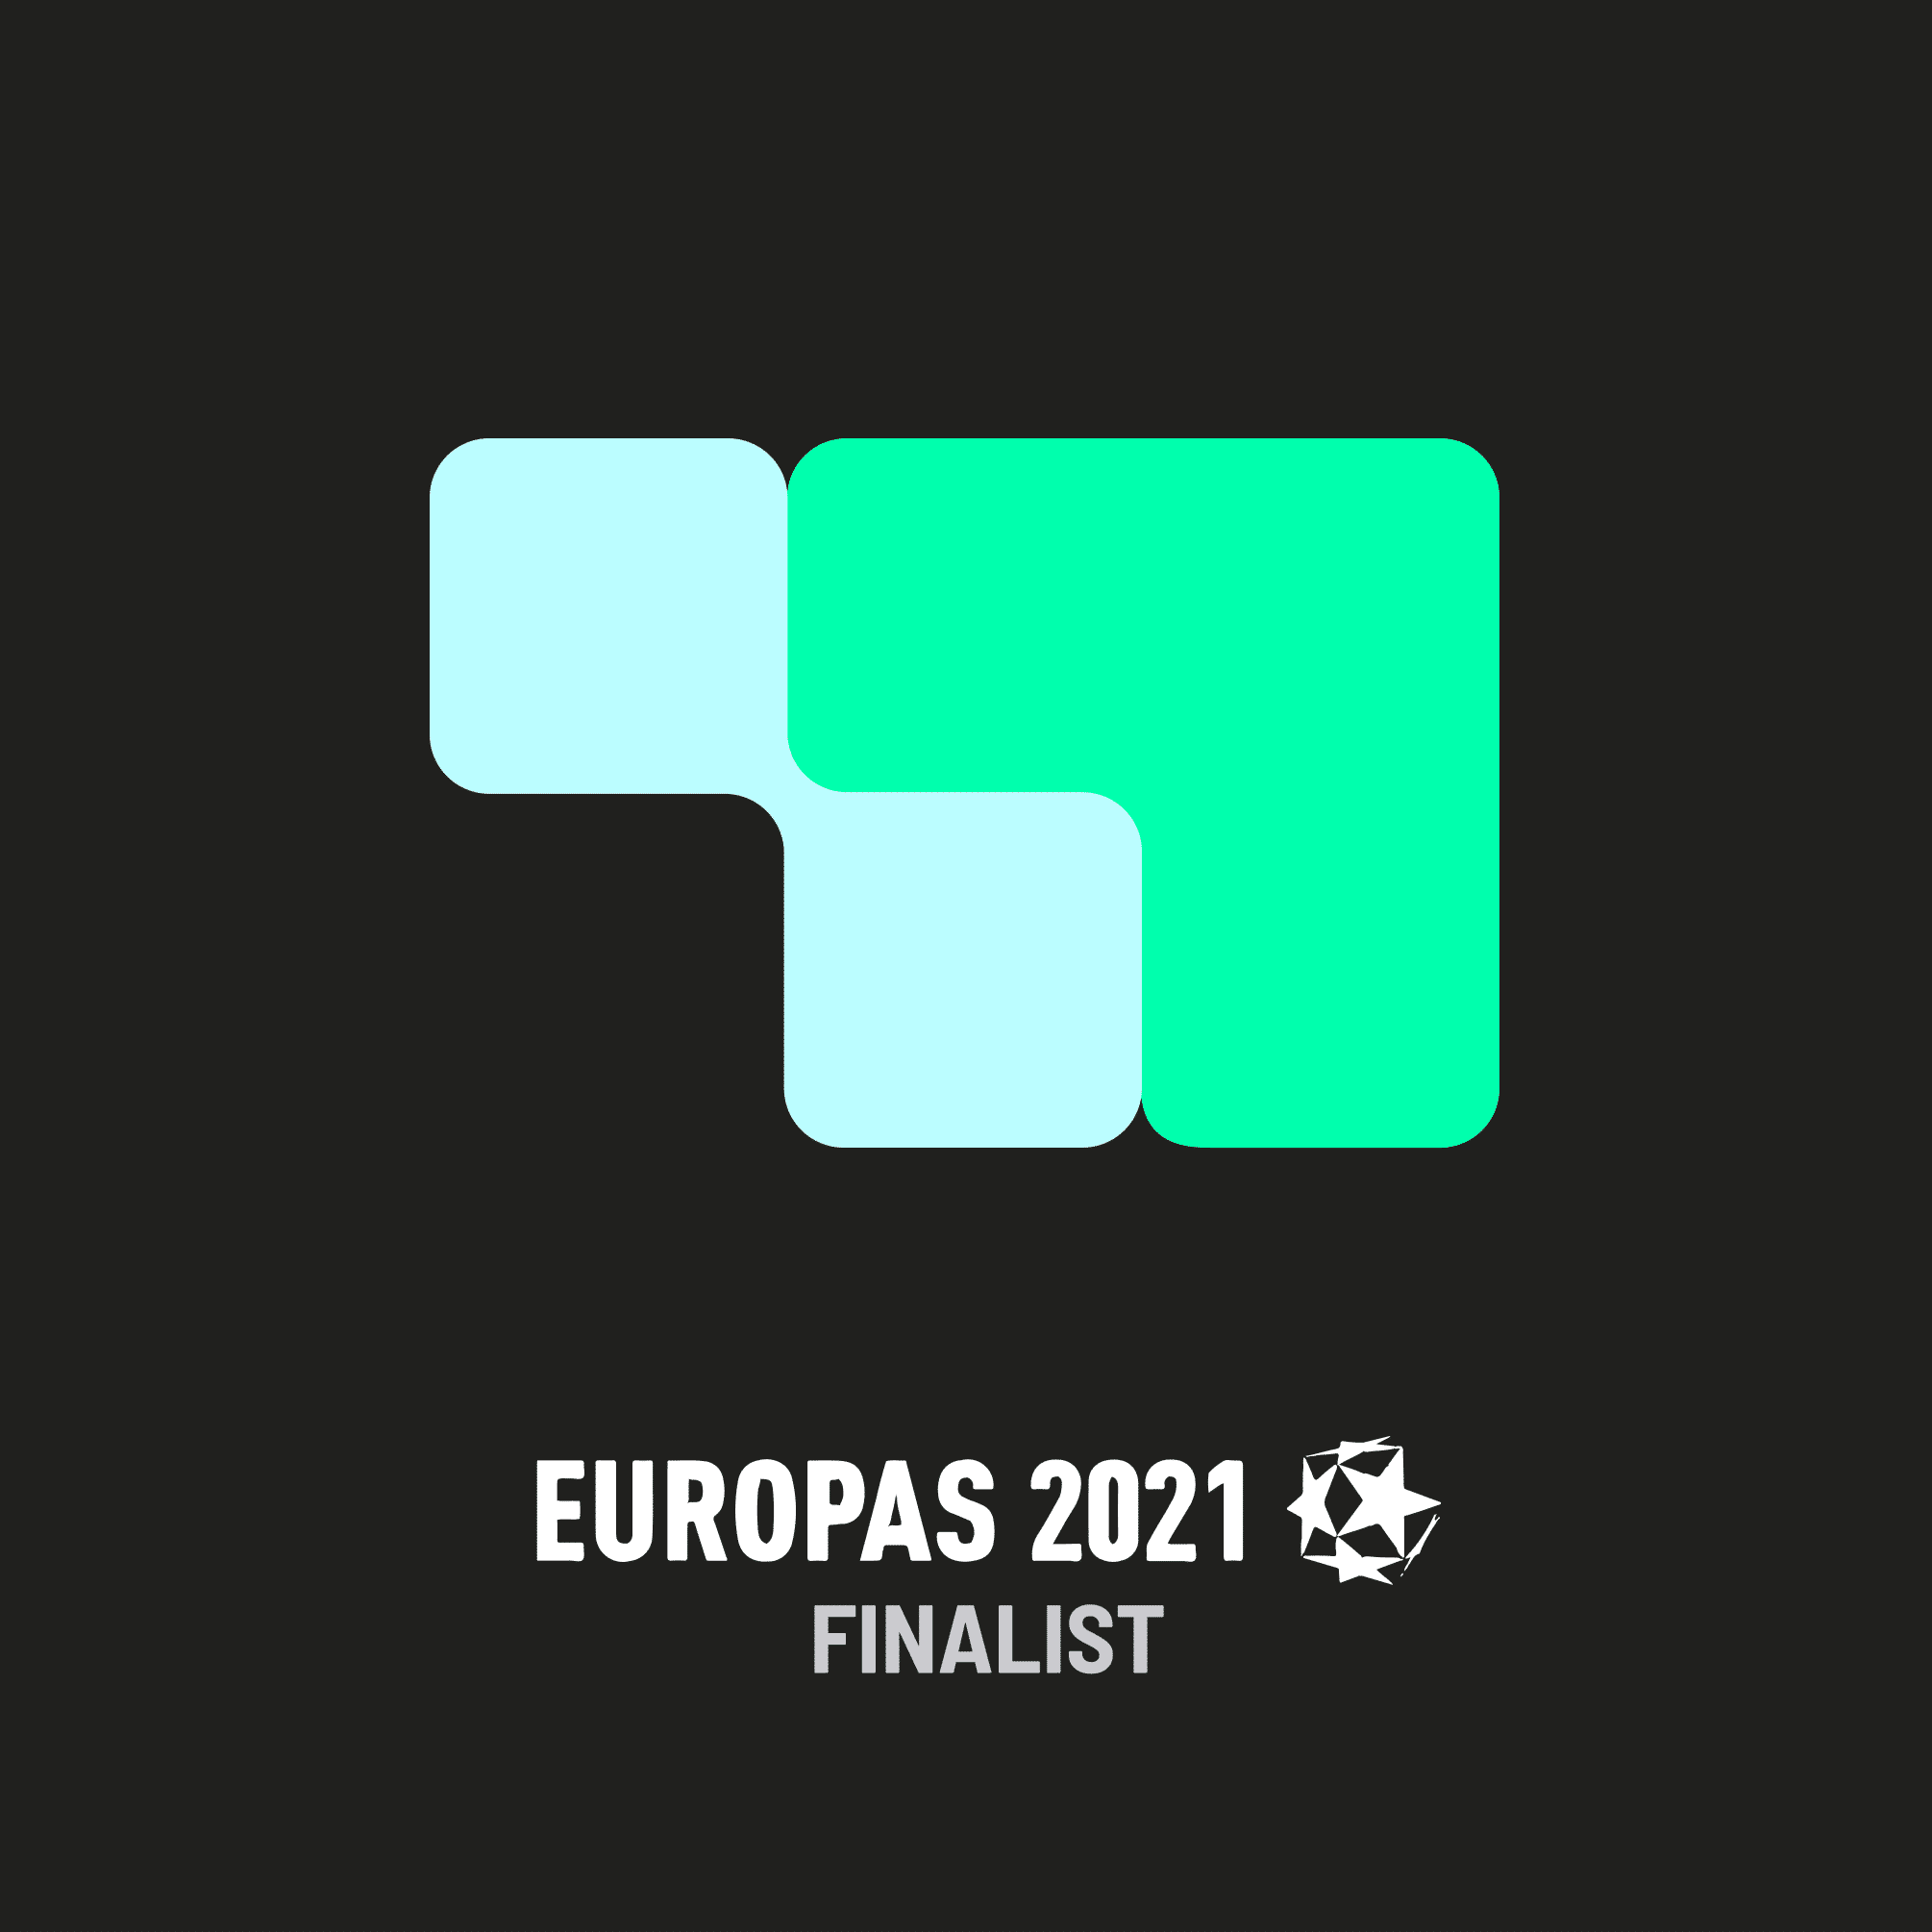 The Europas Finalist 2021 everstox